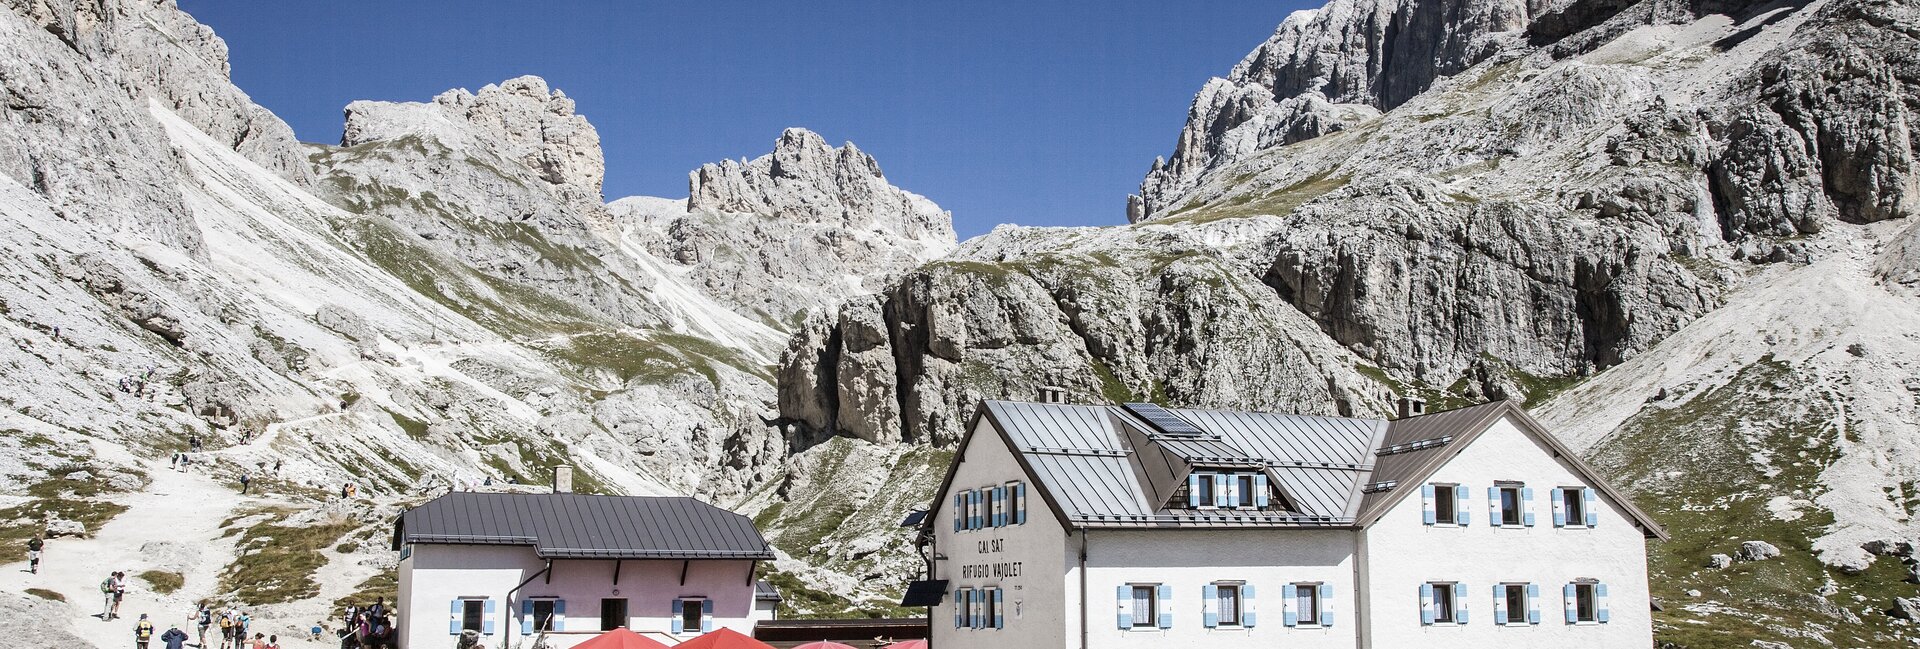 Wo liegt Moena in Italien - Dolomiten - Moena ist der größte der bewohnten Orte des Fassatals